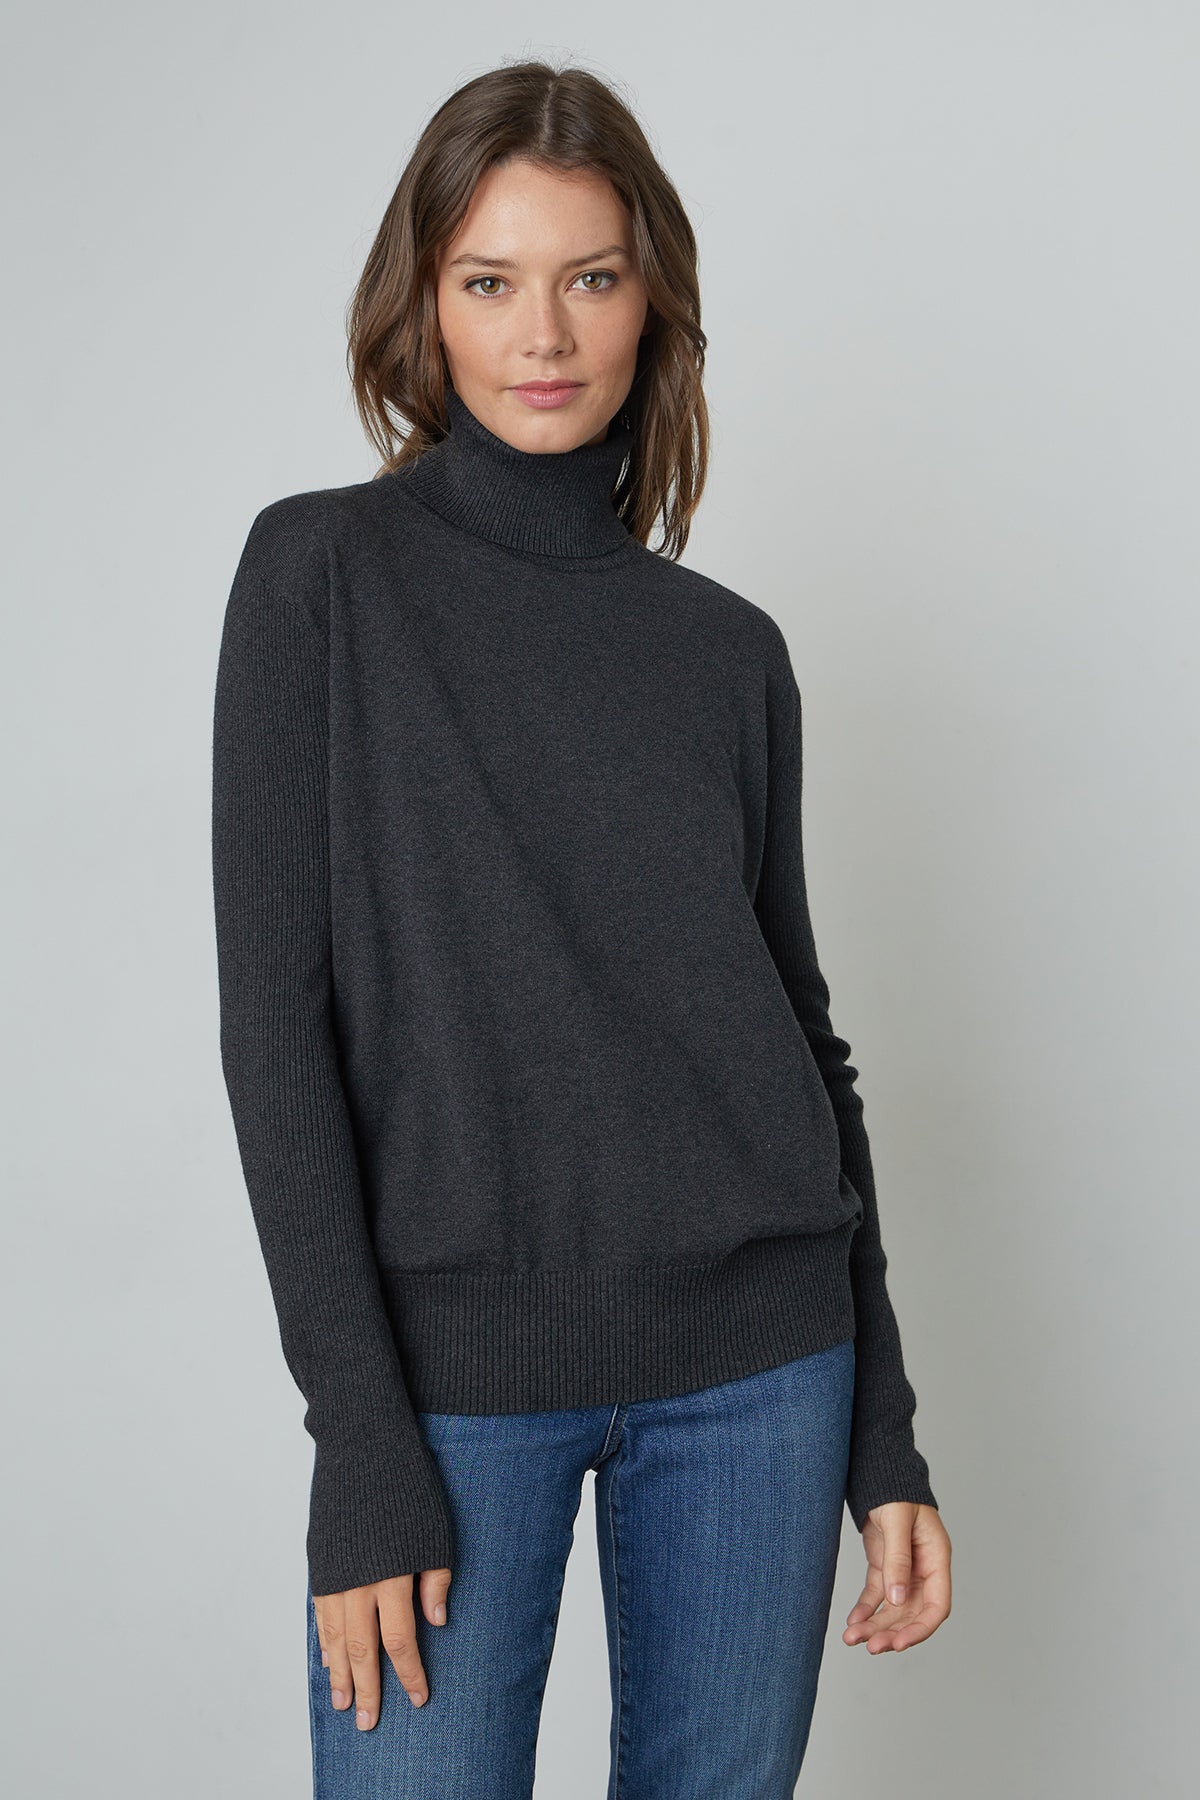   Lux Cotton Cashmere Renny Turtleneck Sweater in dark grey cinder front 2 